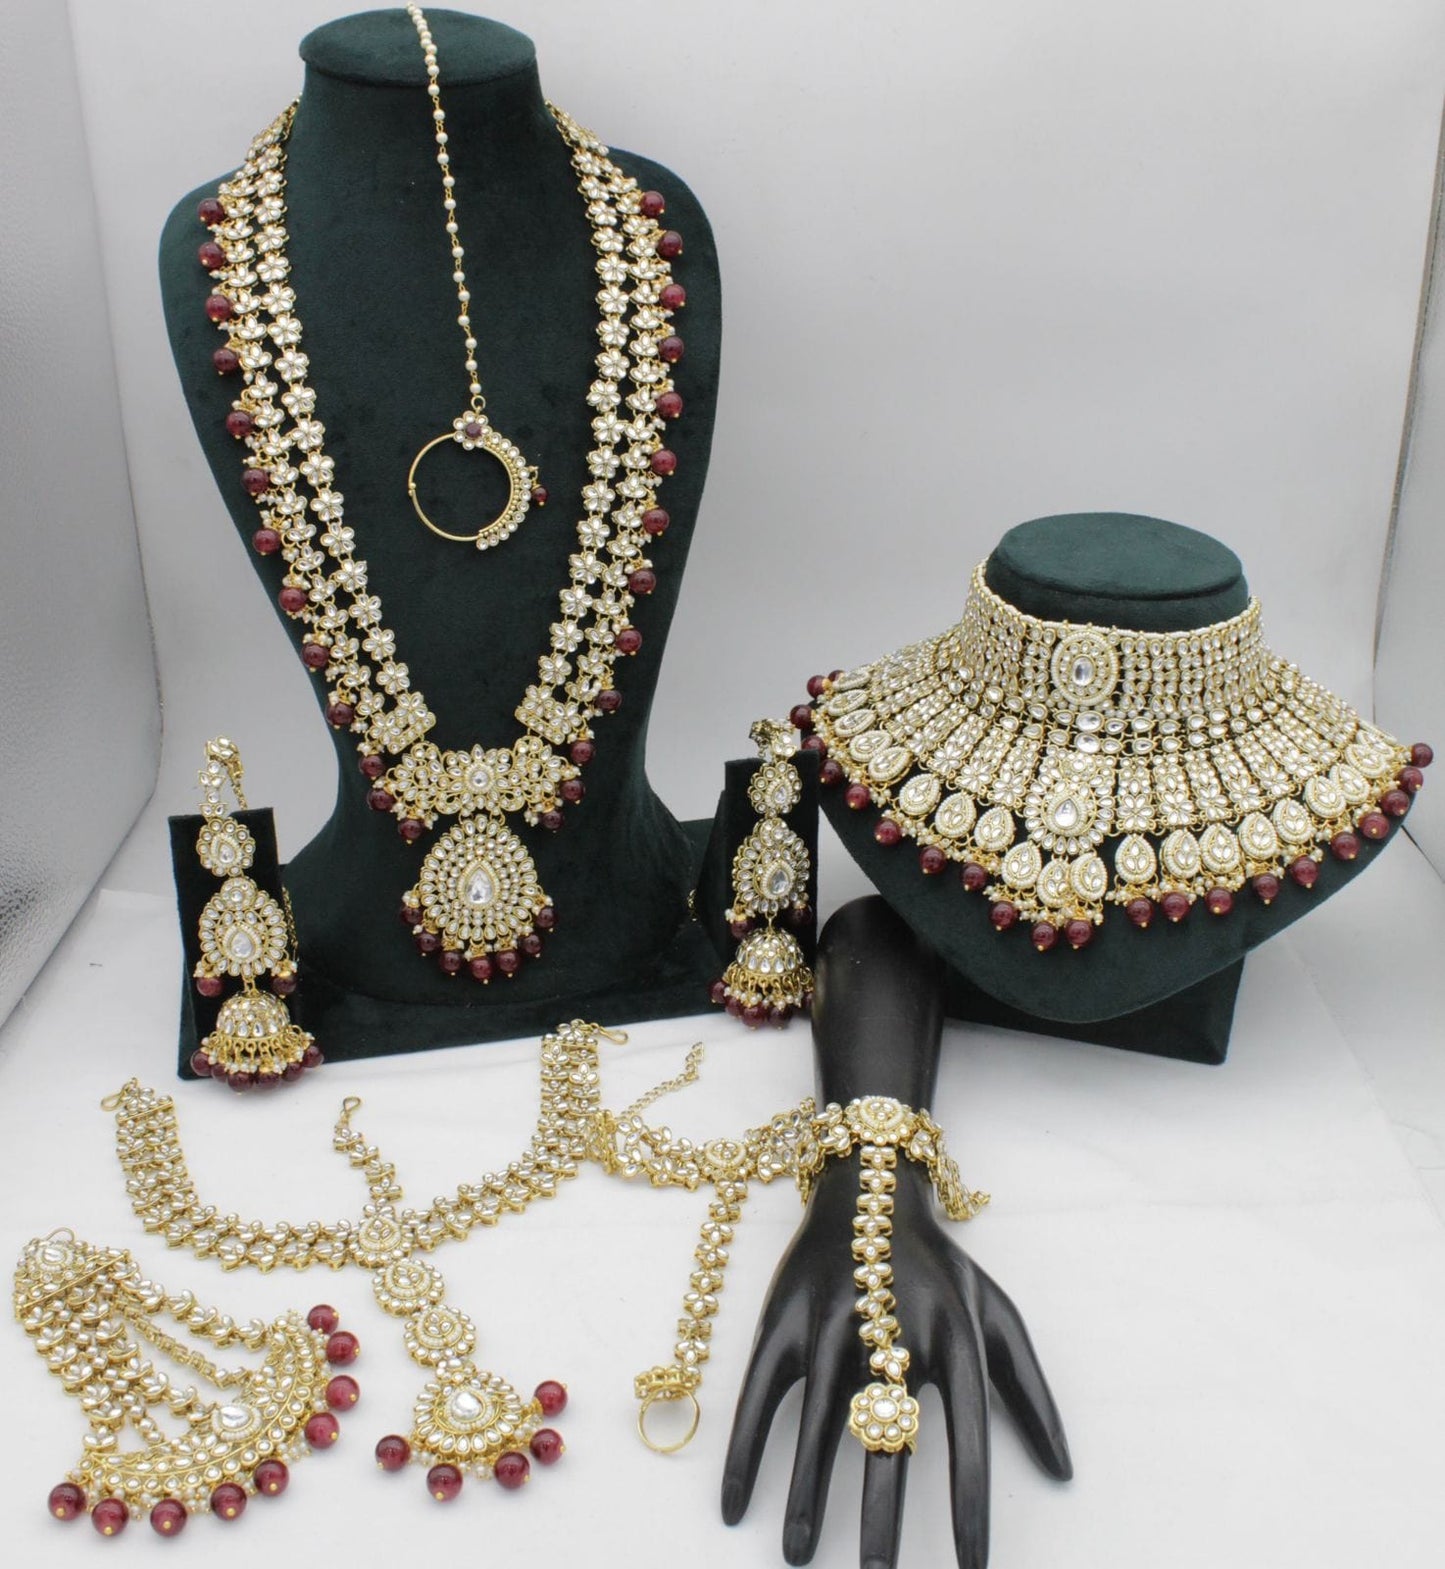 Royal High quality Kundan Bridal Sets at Rs 4500/set